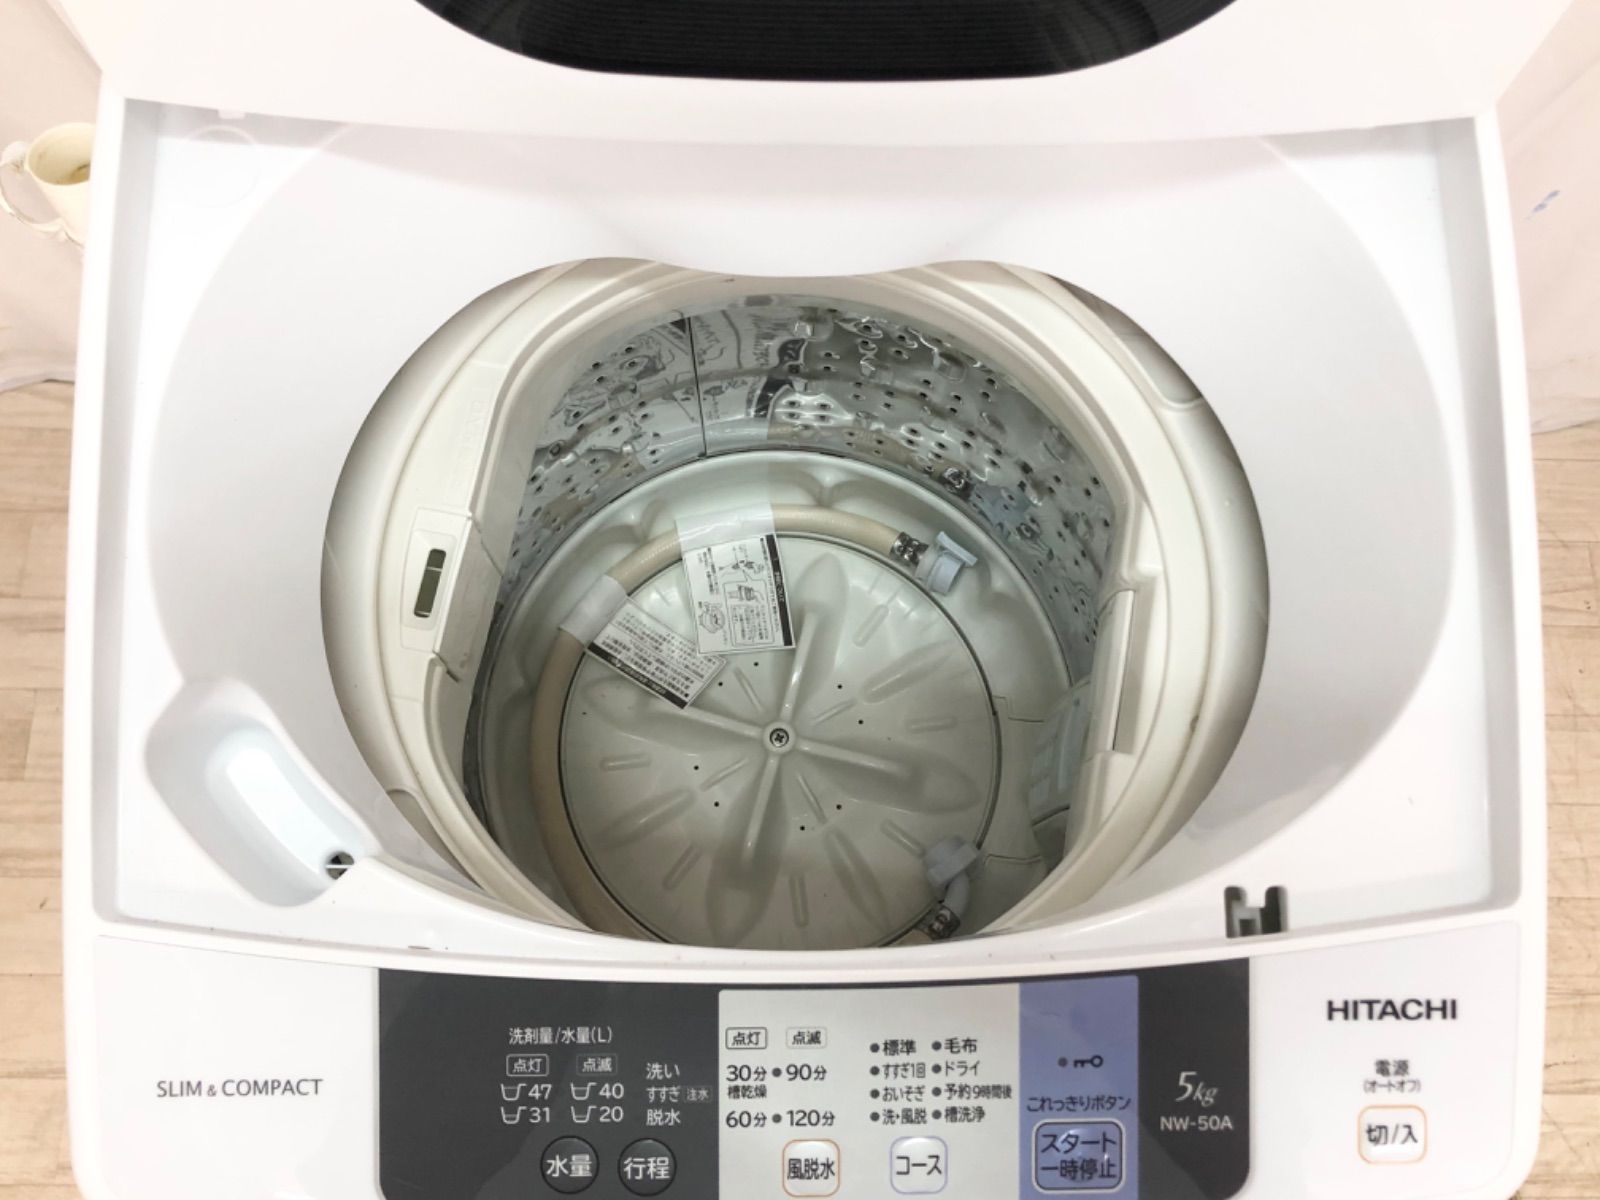 HITACHI NW-50A(W) - 洗濯機